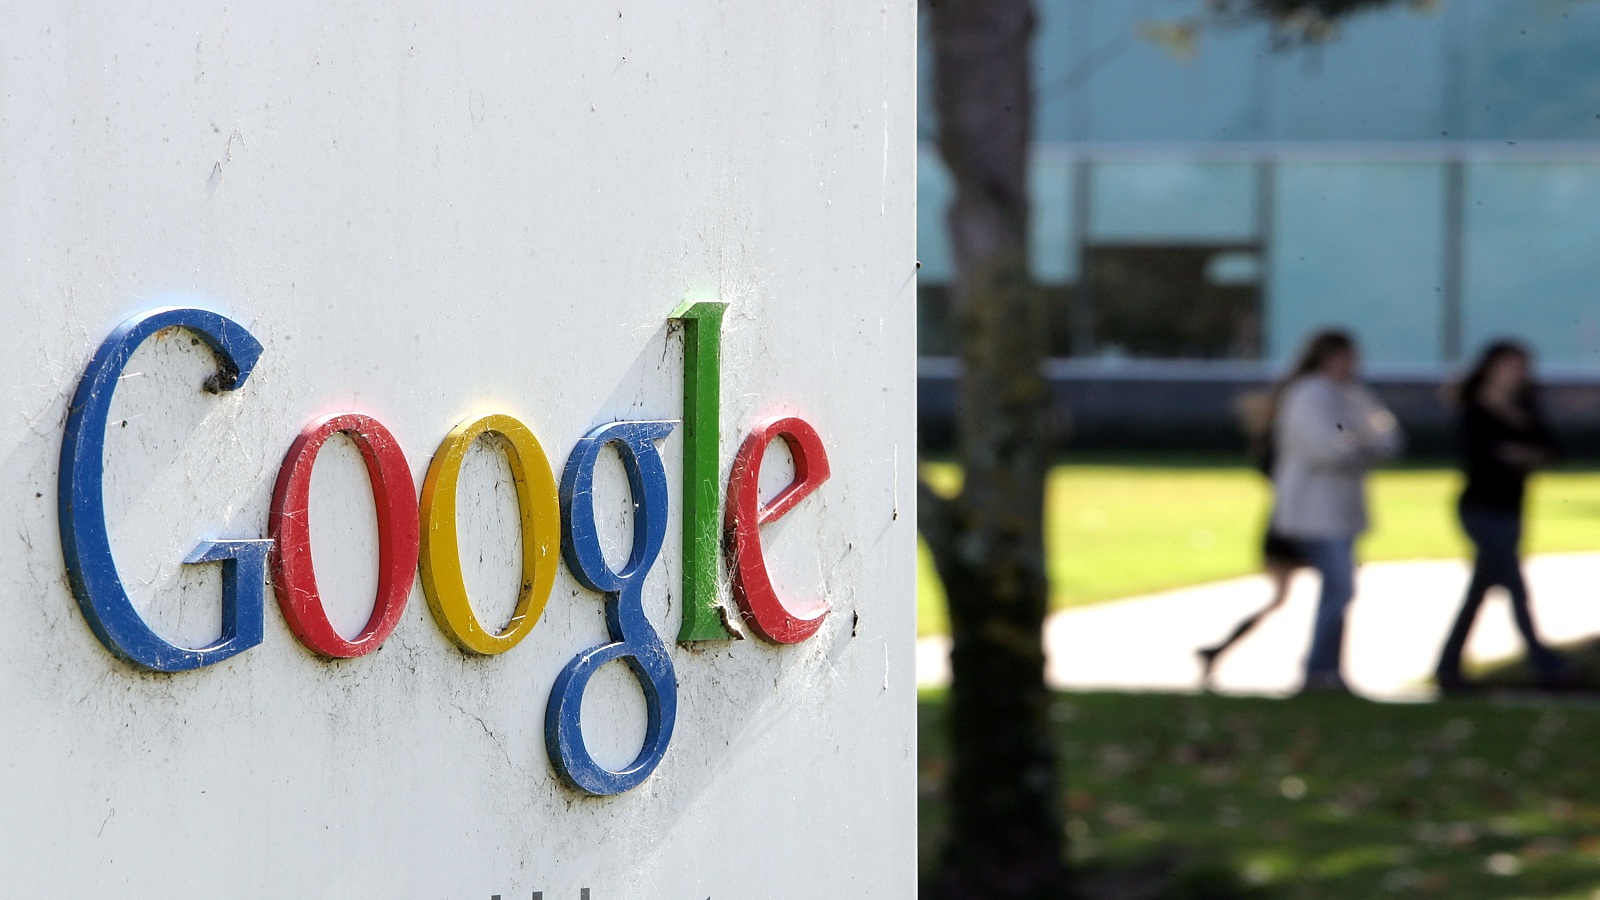 "غوغل" تُطالب بإصلاح قوانين طلب بيانات المستخدمين